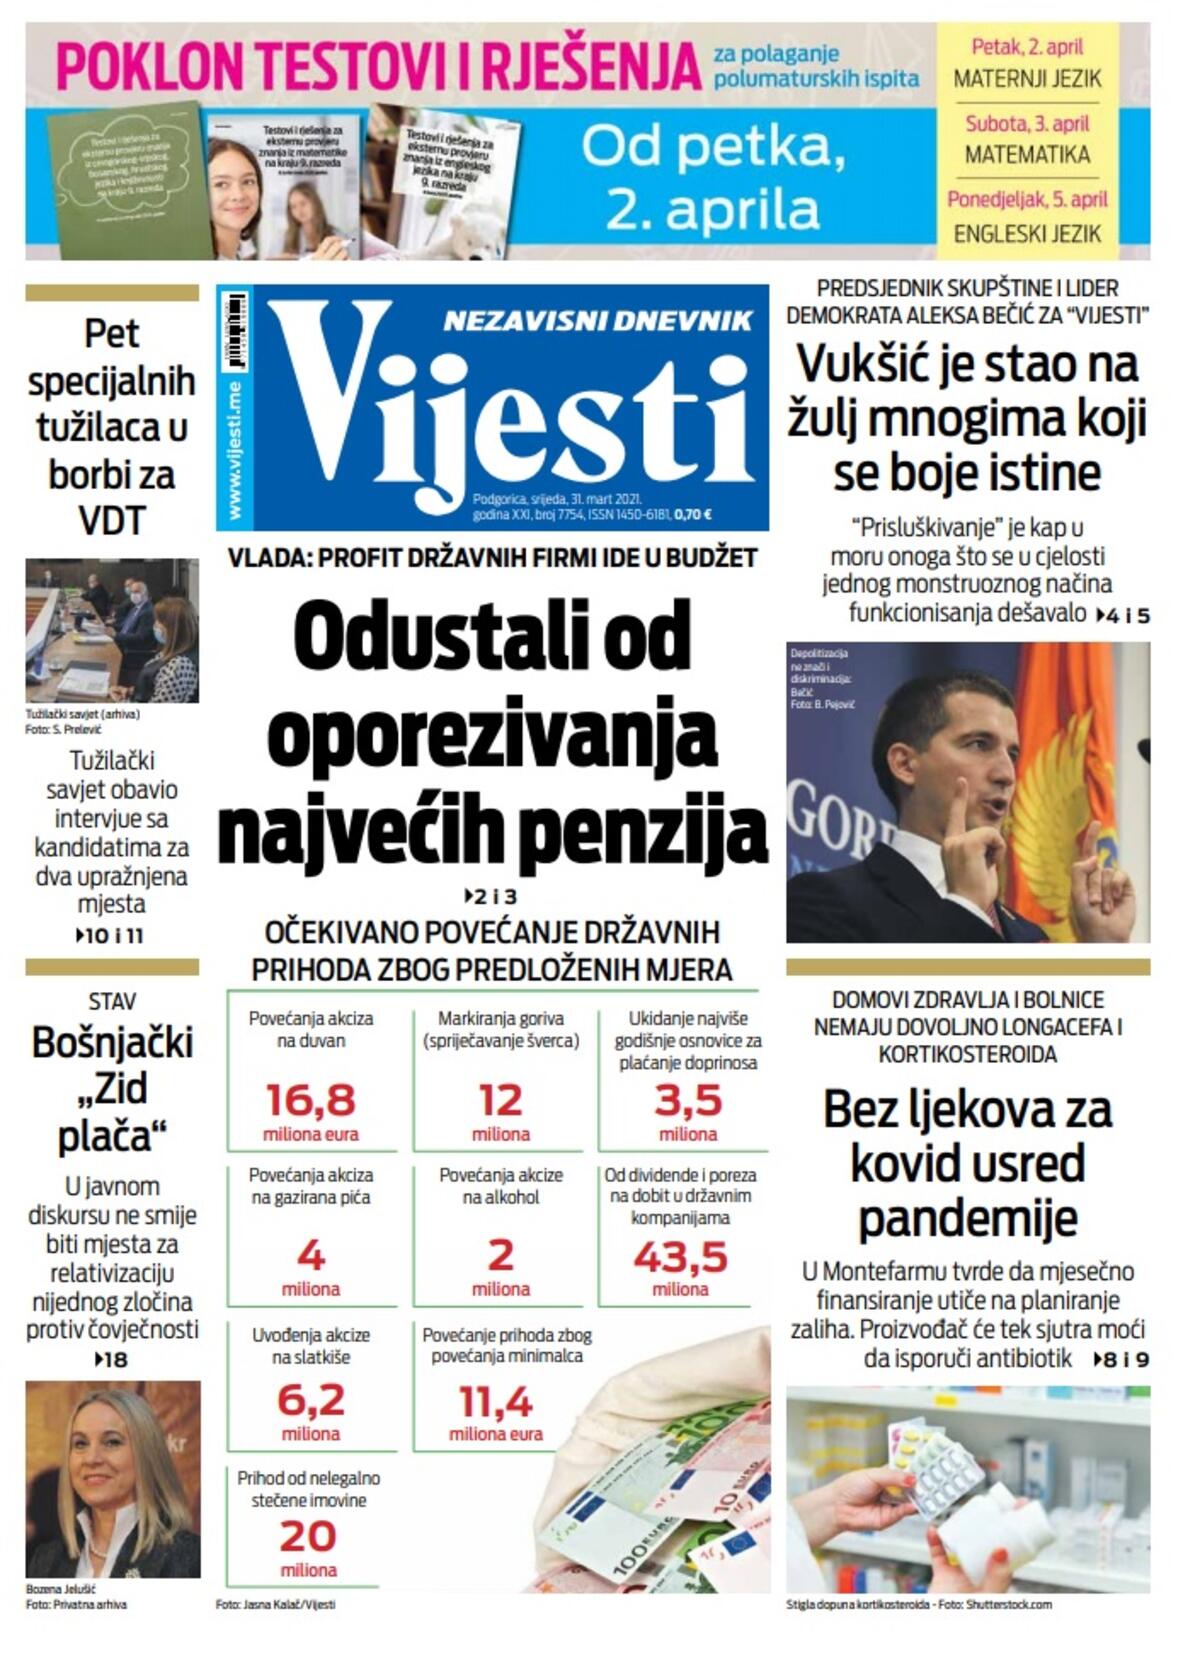 Naslovna strana "Vijesti" za srijedu 31. mart 2021. godine, Foto: Vijesti